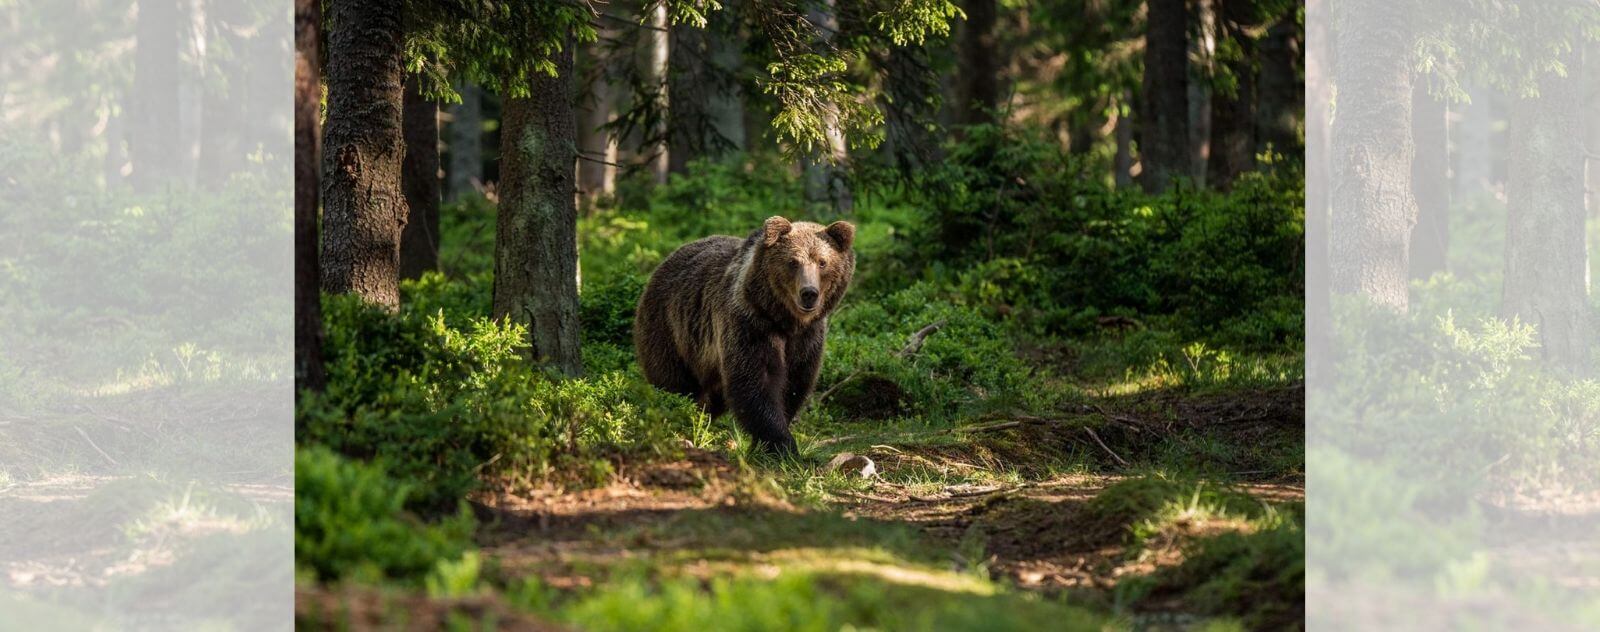 Ours dans la Forêt au Canada